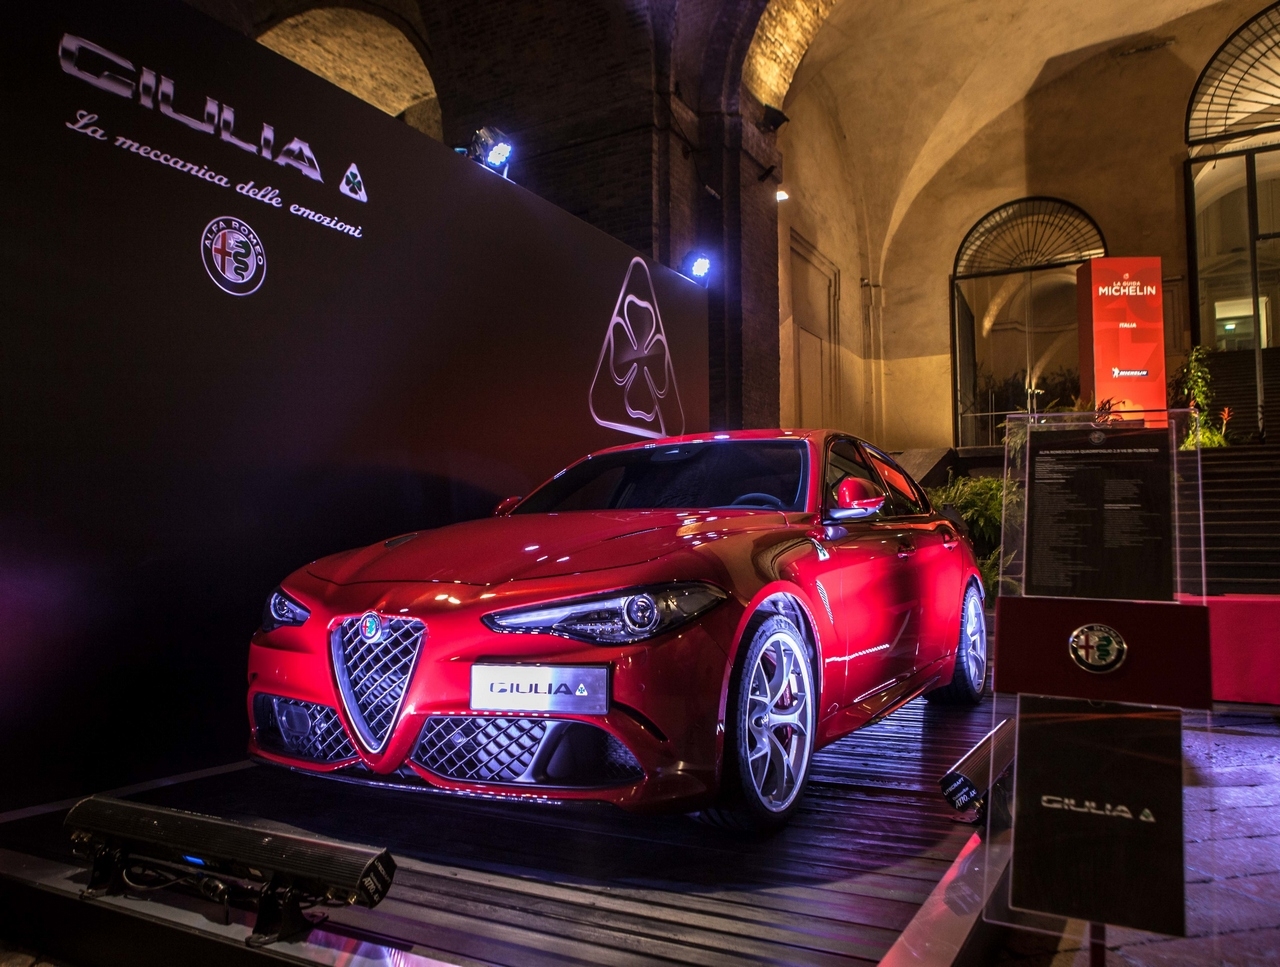 Alfa Romeo main partner della Guida Michelin 2017